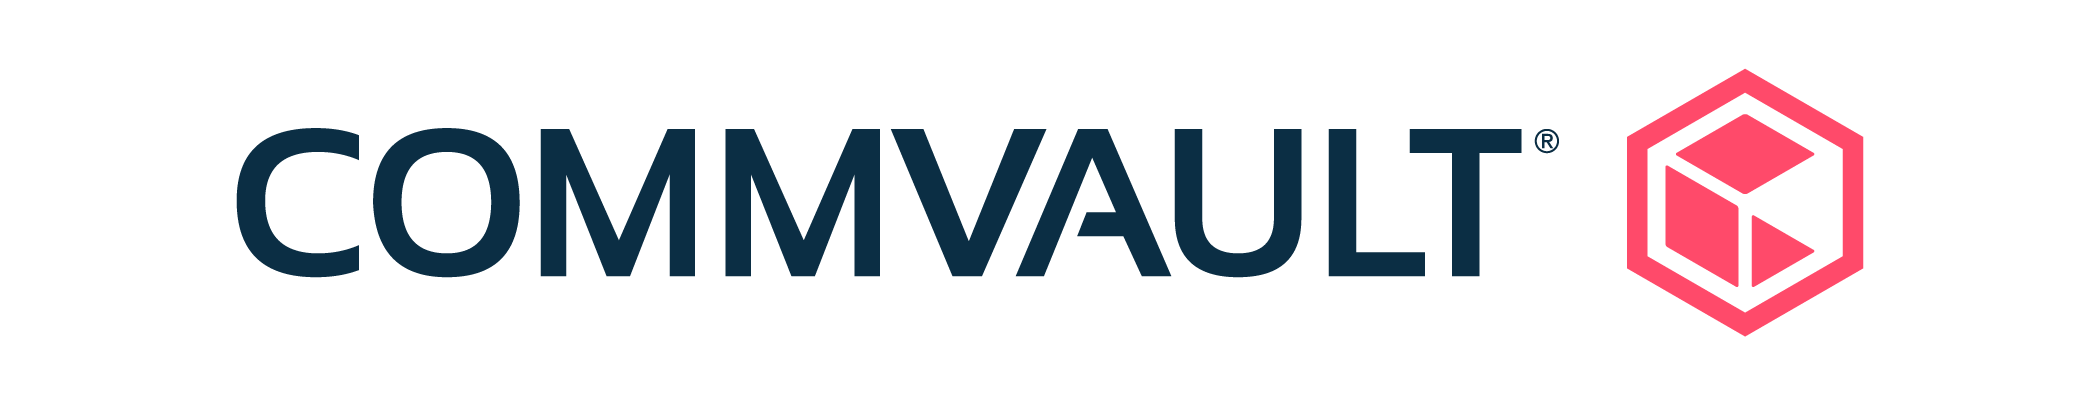 Logo: Commvault